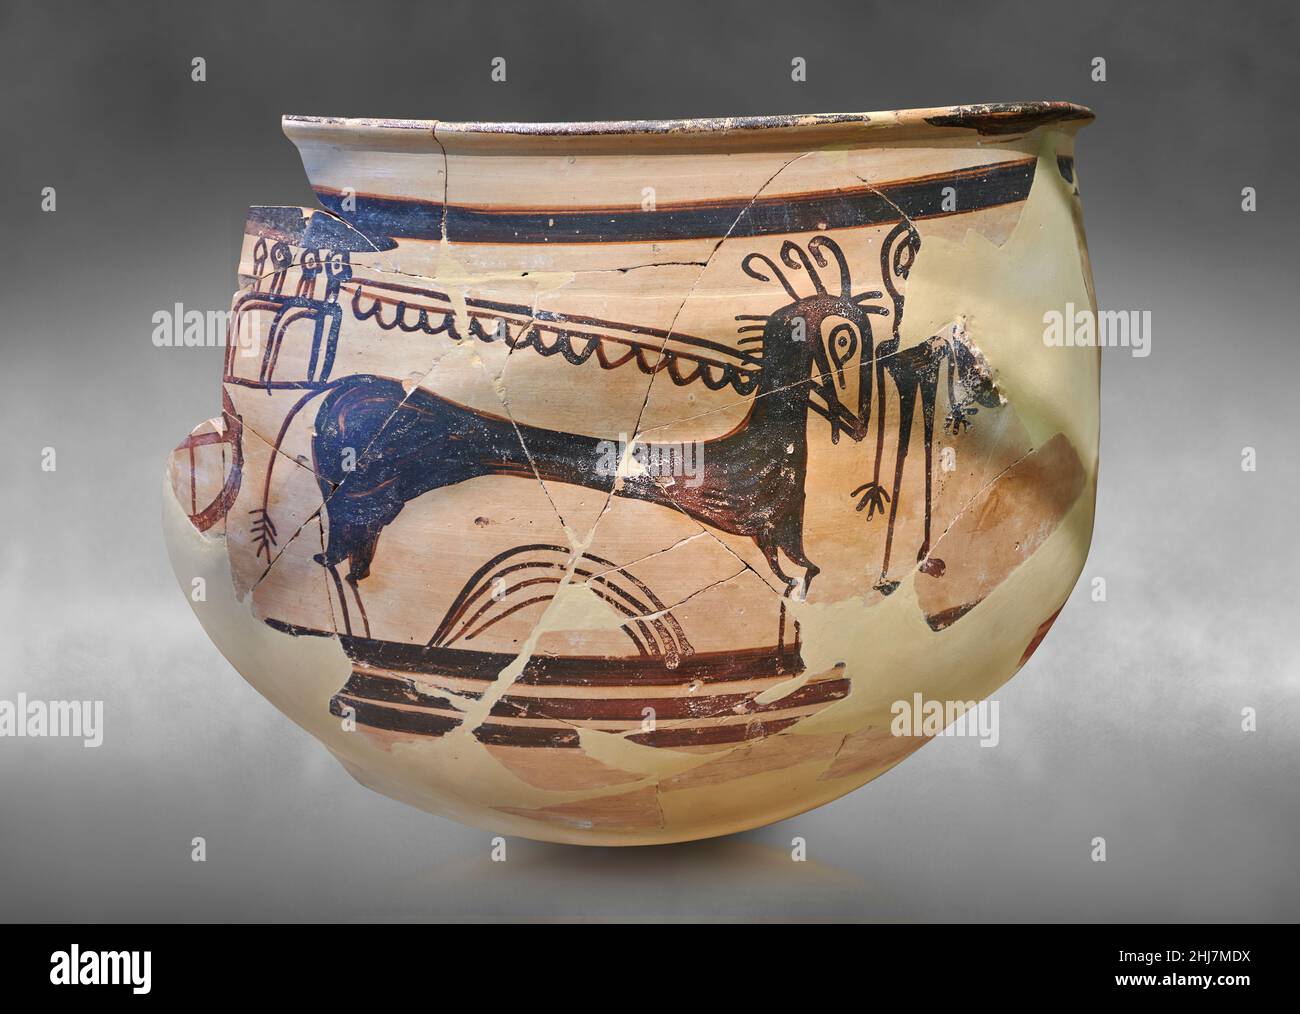 Mykenische Keramik - Kraterfragment, das eine Pferd- und Wagenszene darstellt, Tiryns, 1400-1300 v. Chr. Archäologisches Museum Nafplion. Gegen grauen Kunstrückstand Stockfoto